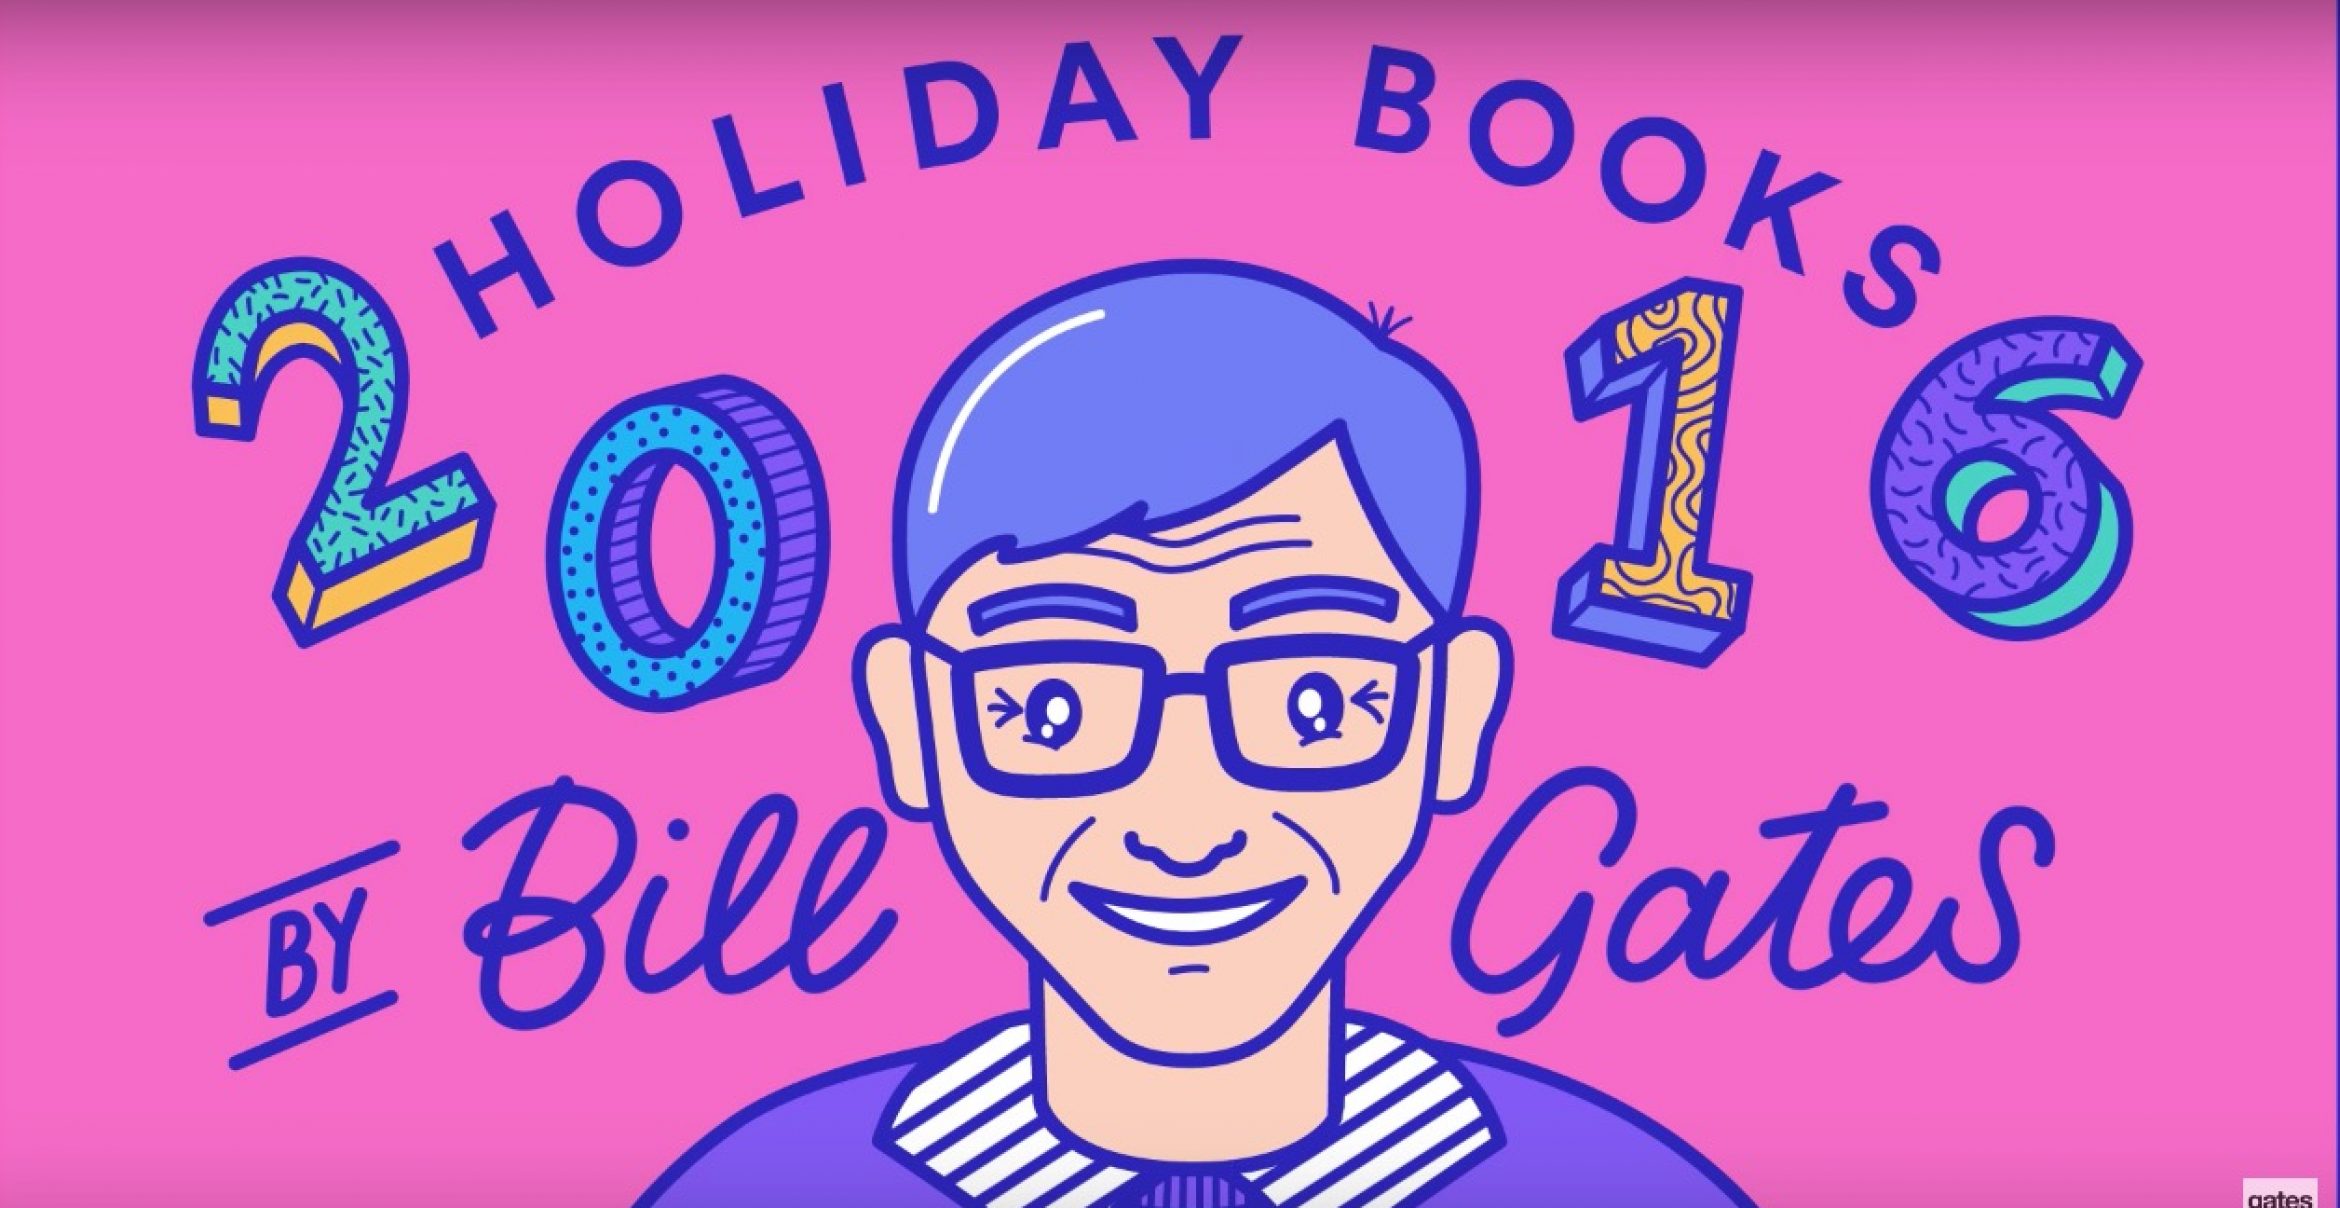 “Holiday Books 2016“: Das sind die 5 Lieblingsbücher des Jahres von Bill Gates